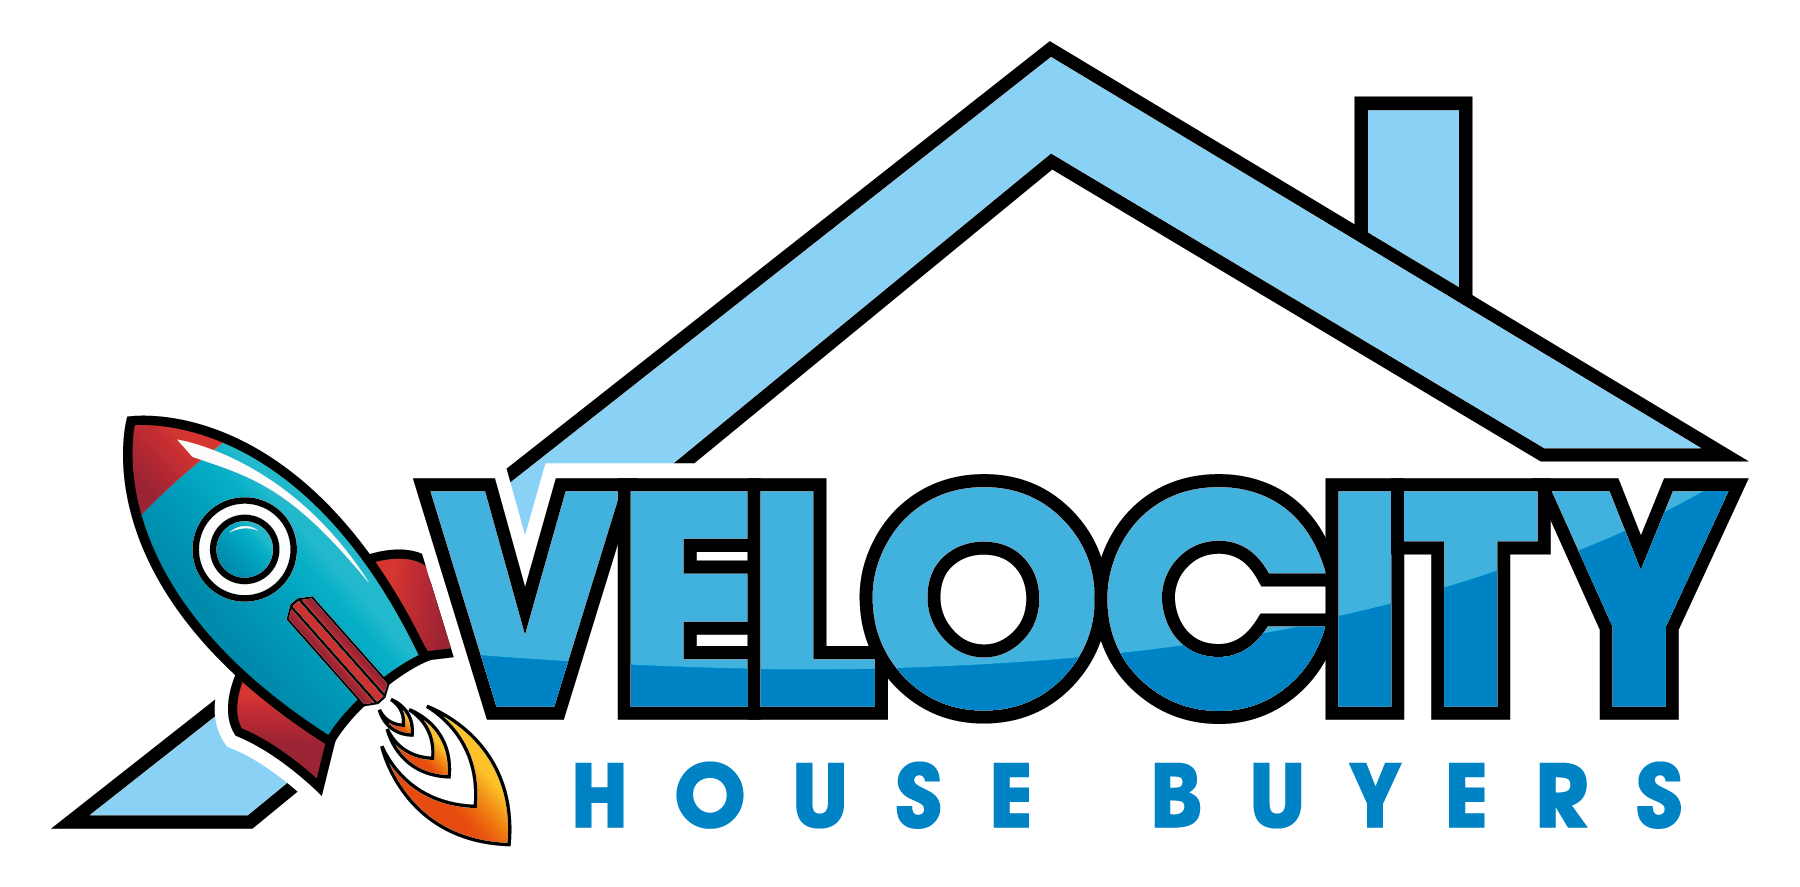 Velocity House Buyers  logo